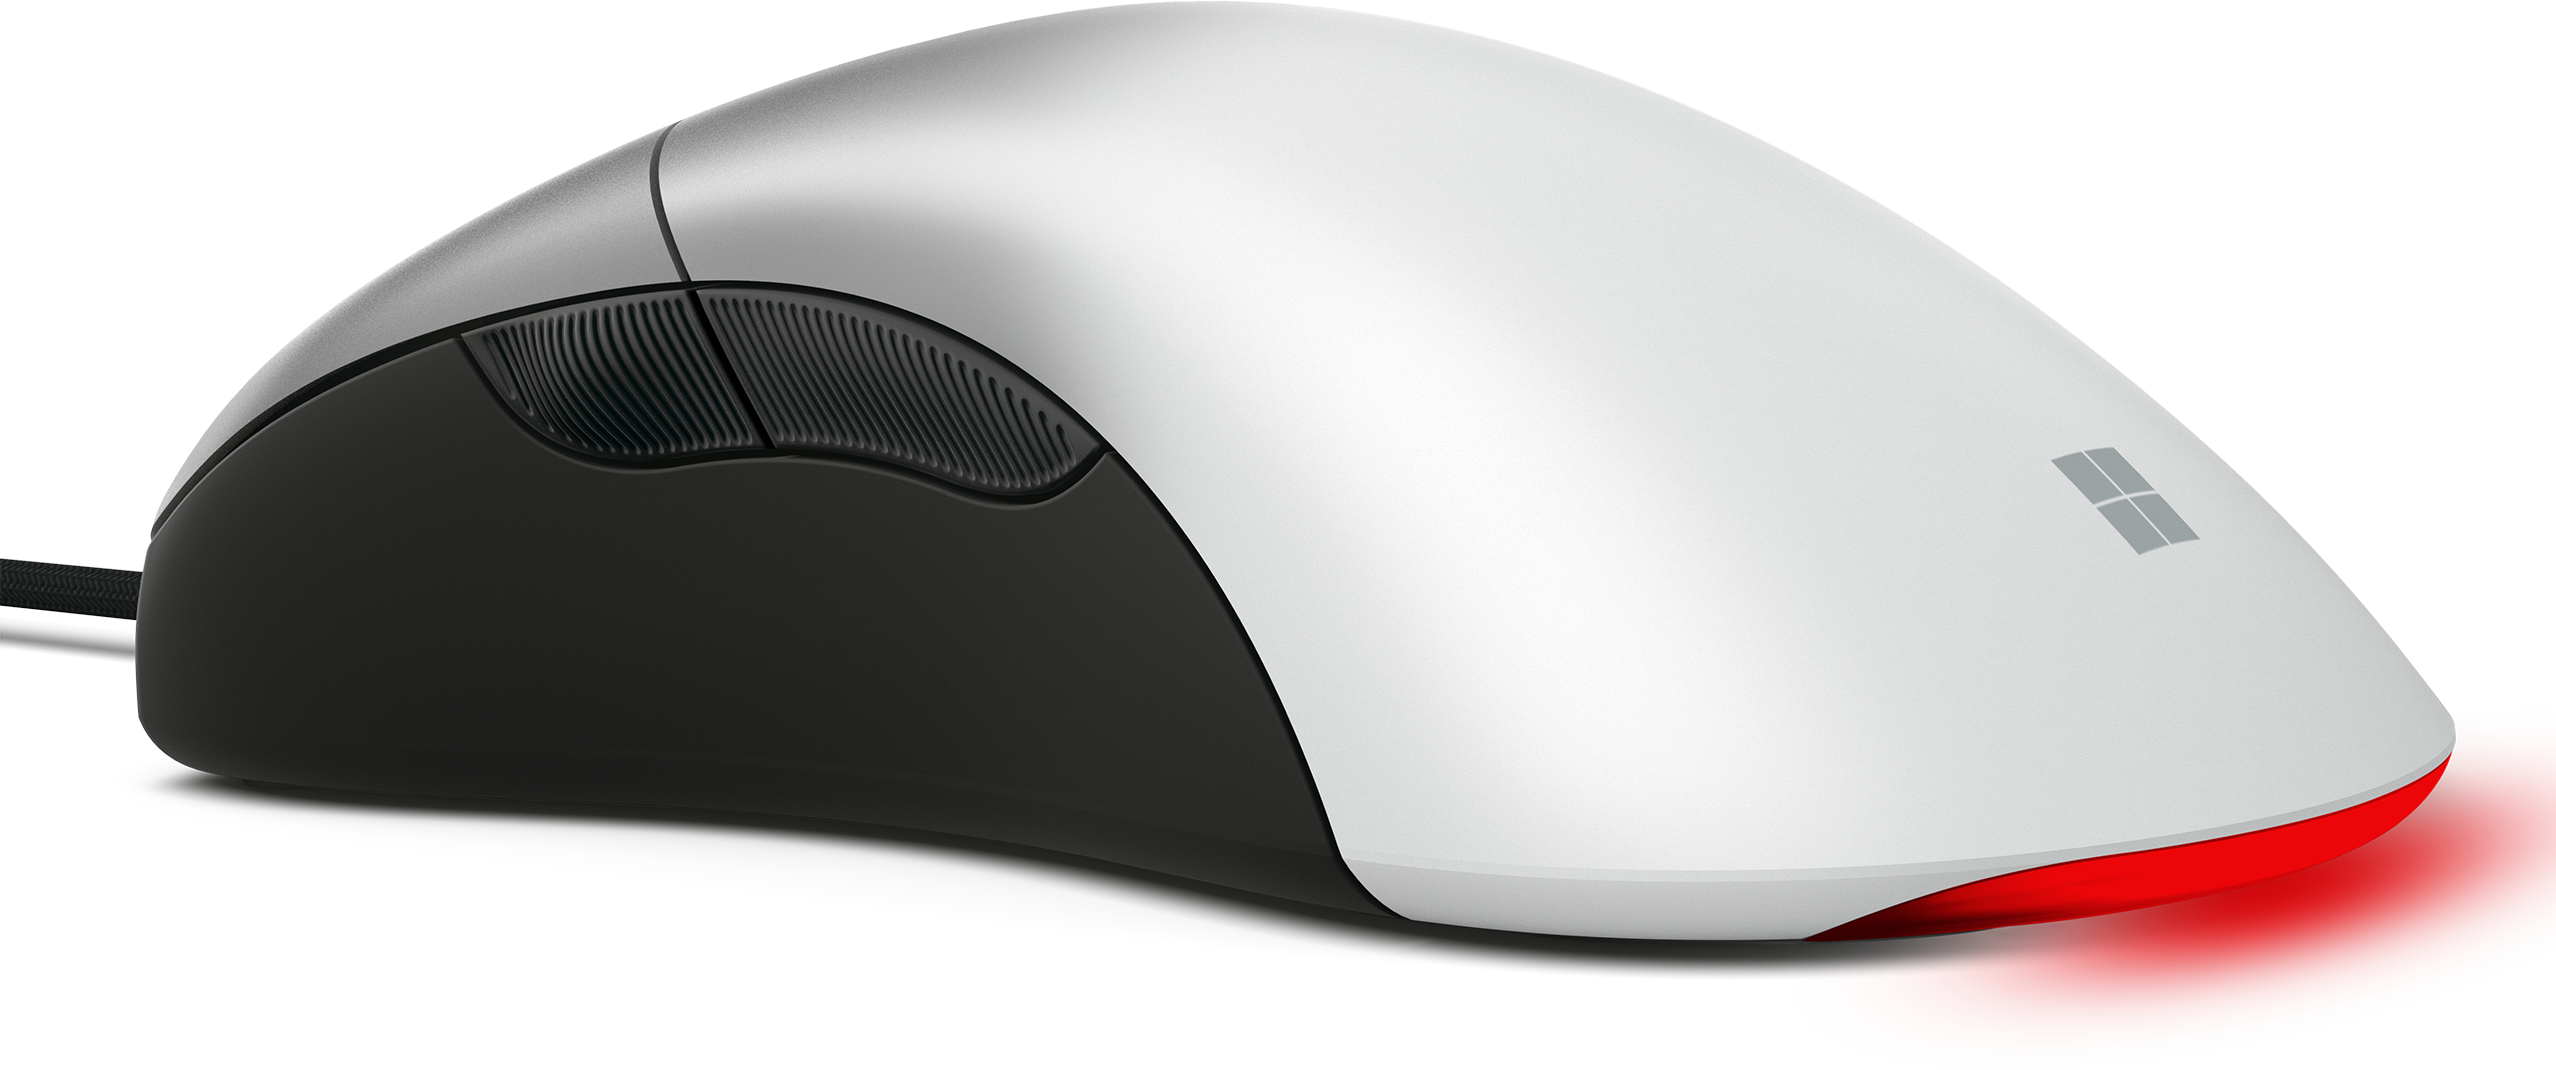 Microsoft Pro IntelliMouse　マウス パソコン周辺機器 格安 セール